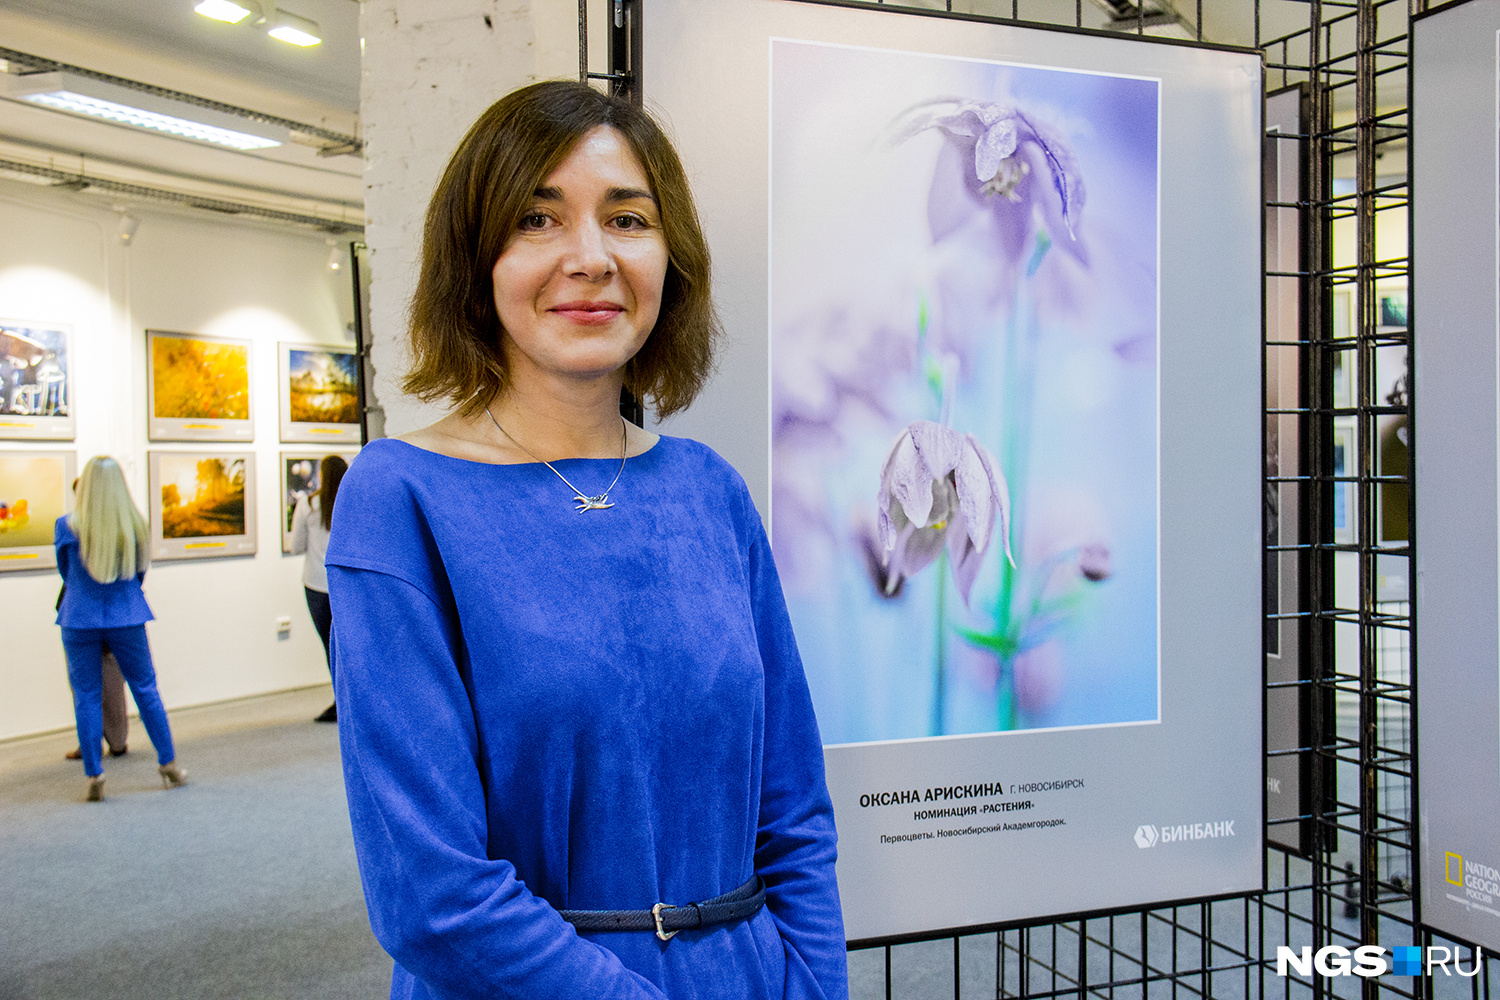 Вторая фотография Оксаны Арискиной, вошедшая в шорт-лист конкурса, — «Первоцветы» — сделана недалеко от ботанического сада Академгородка